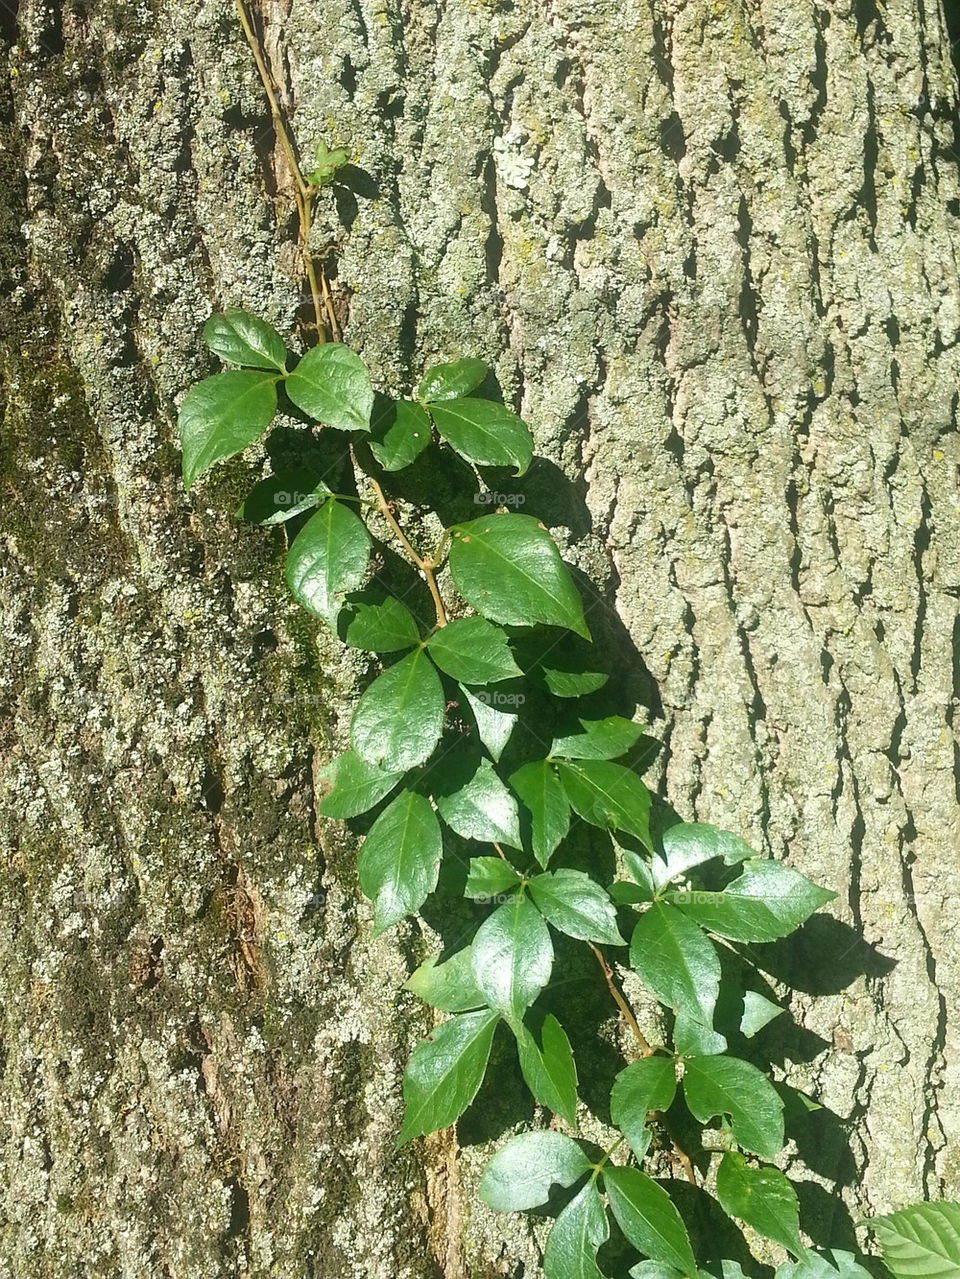 Poison ivy vine